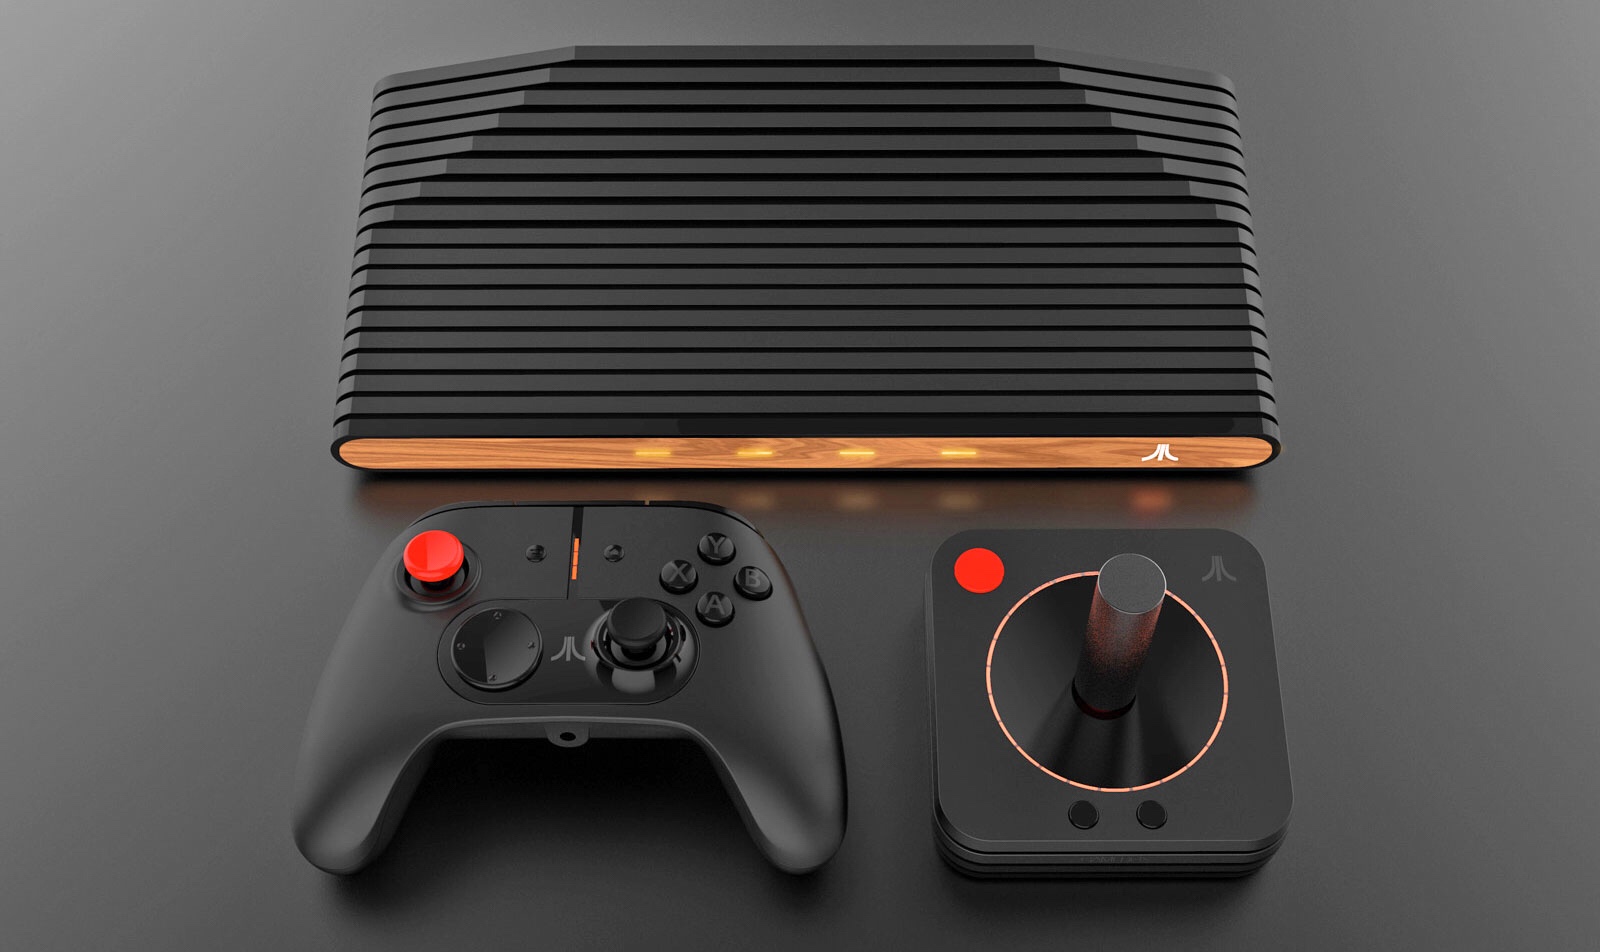 Meet Atari VCS, the retro console that remains a tease